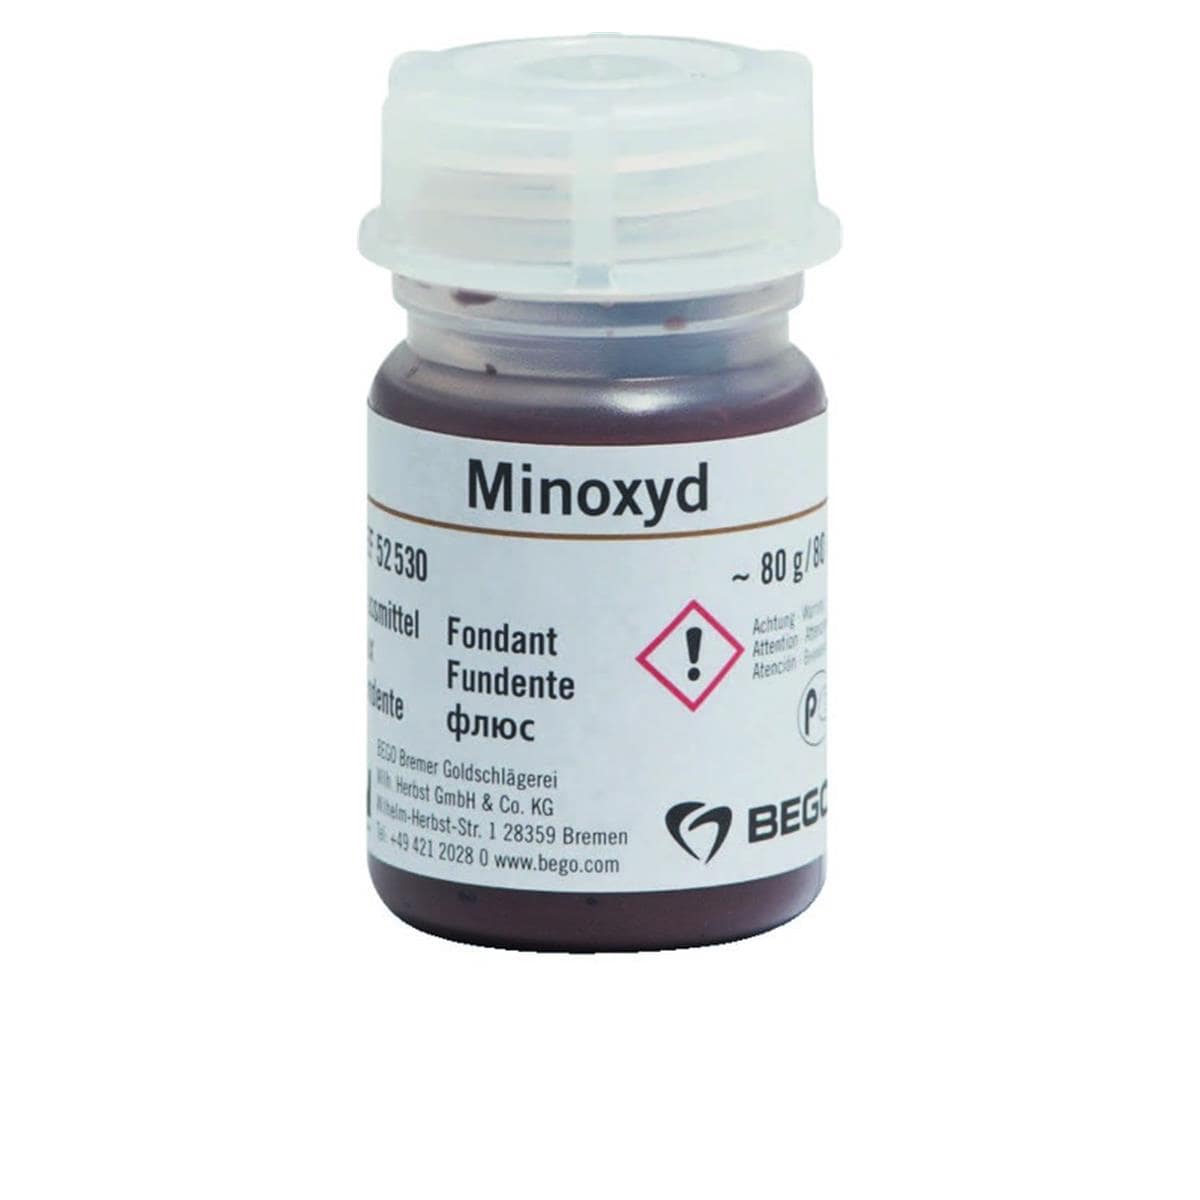 Minoxyd BEGO - Le flacon de 80 g